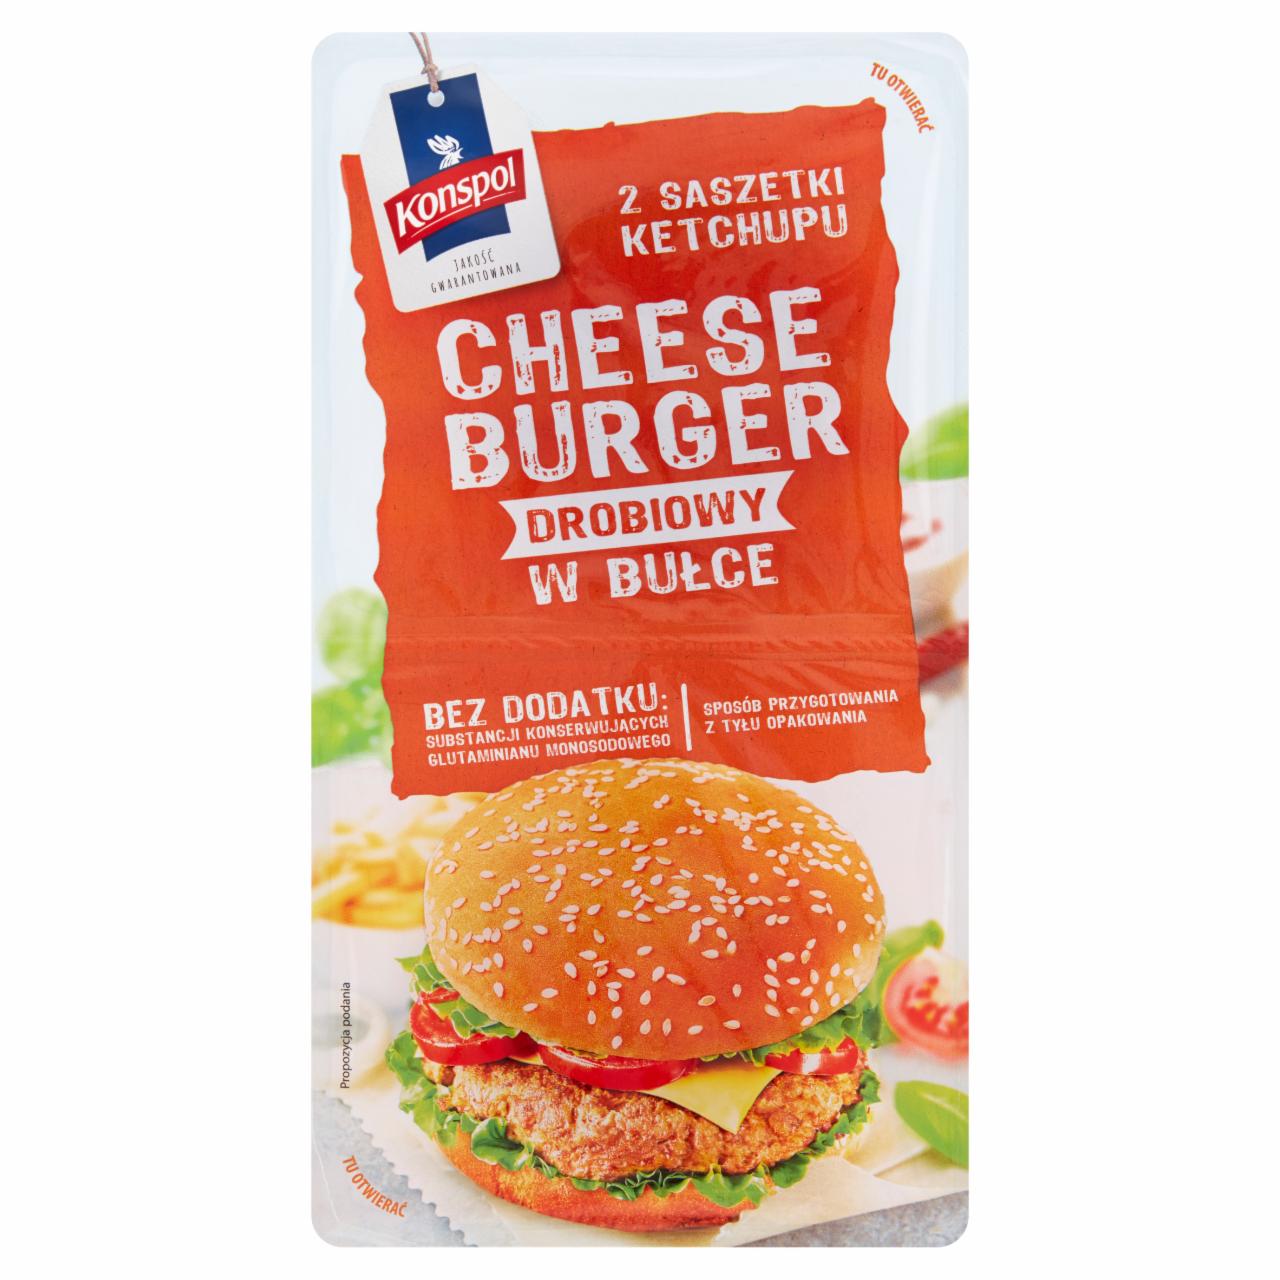 Zdjęcia - Konspol Cheeseburger drobiowy w bułce z ketchupem 320 g (2 x 150 g + 2 x 10 g)